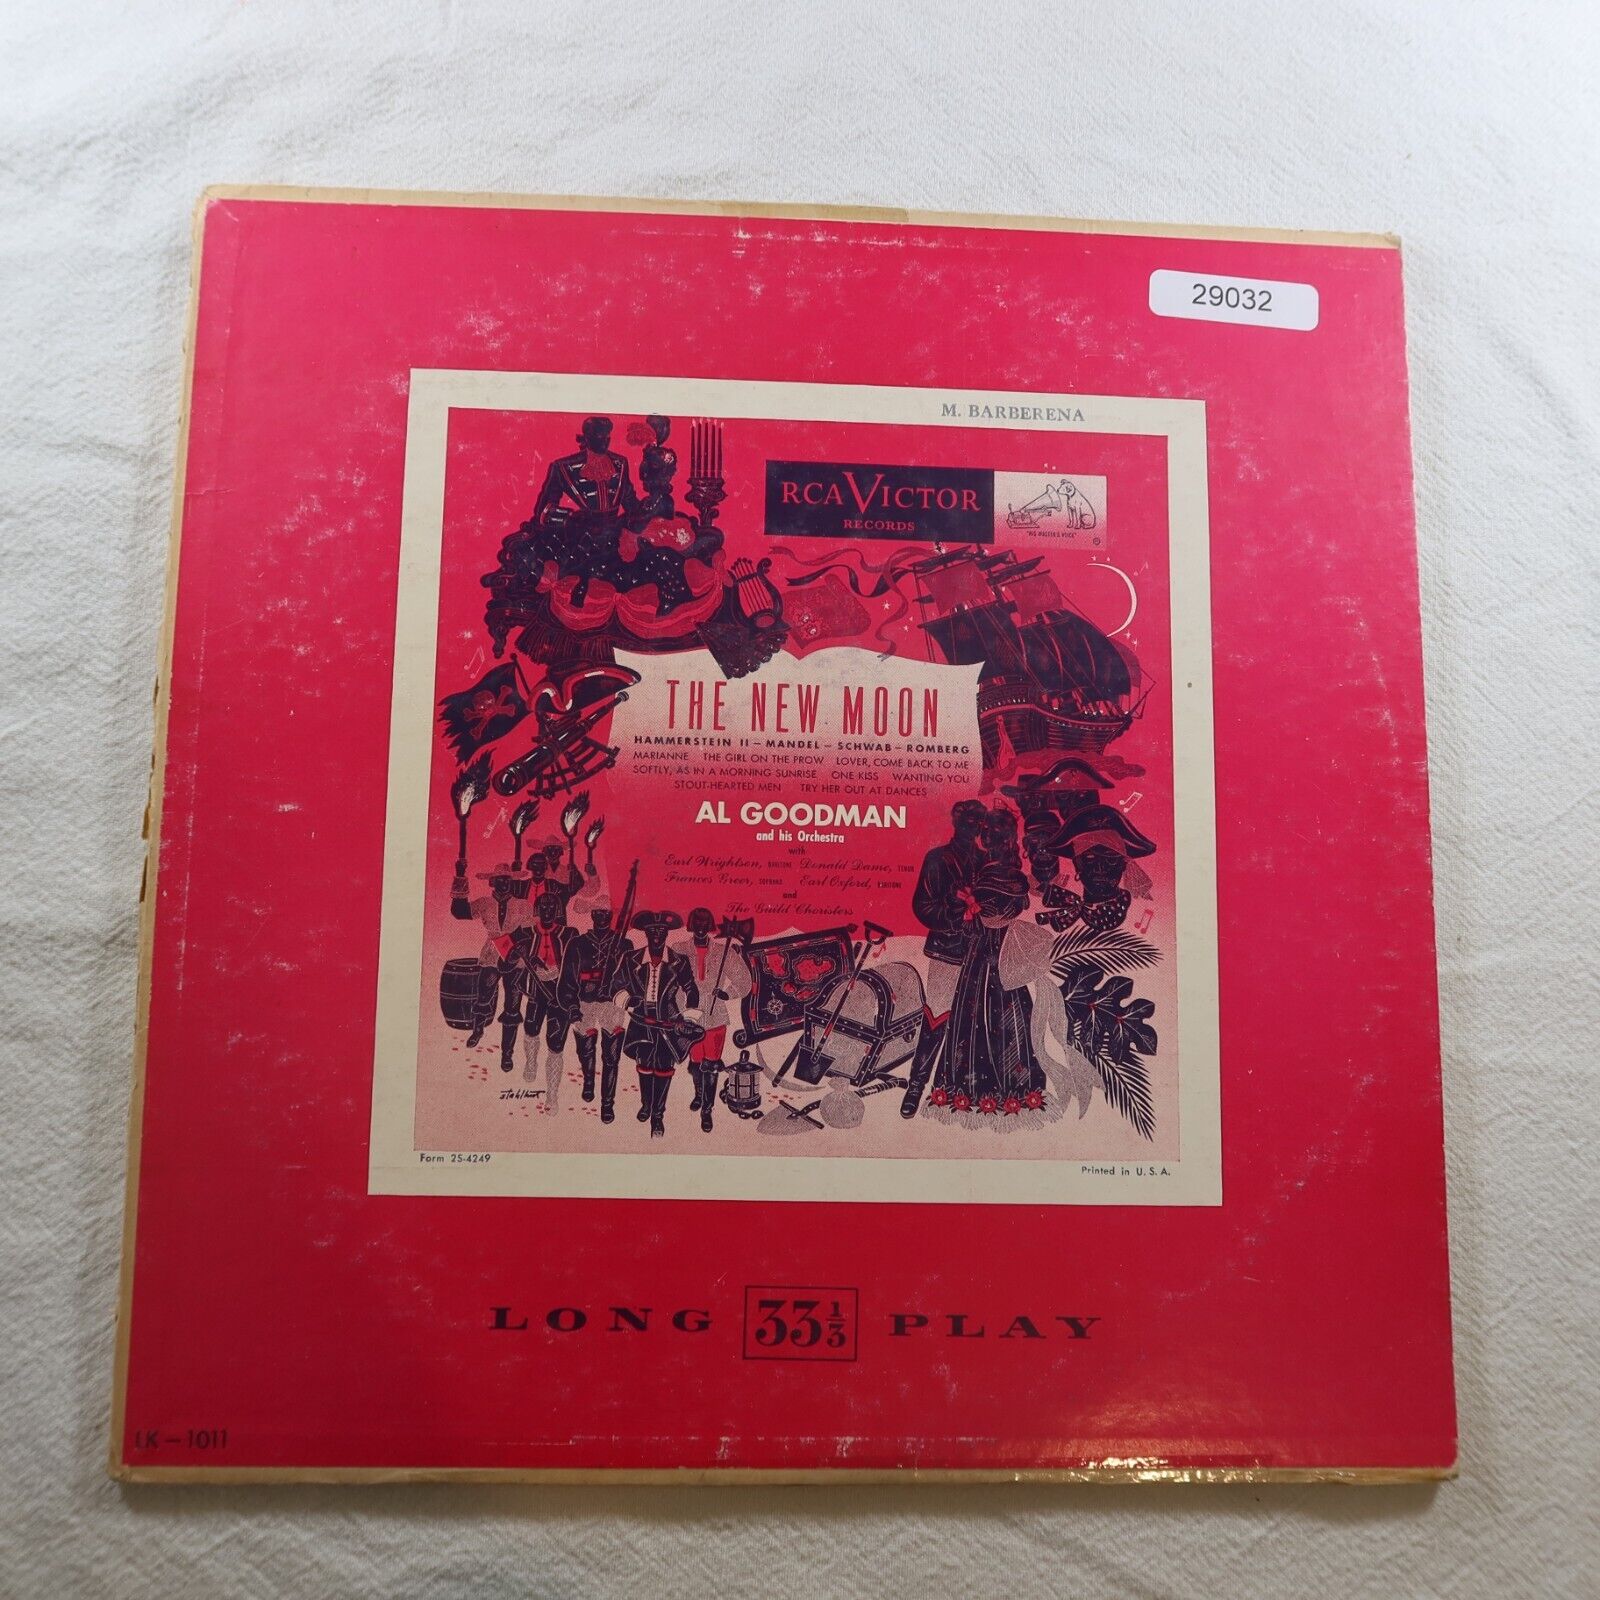 Al Goodman The New Moon LP Vinyl Record Album